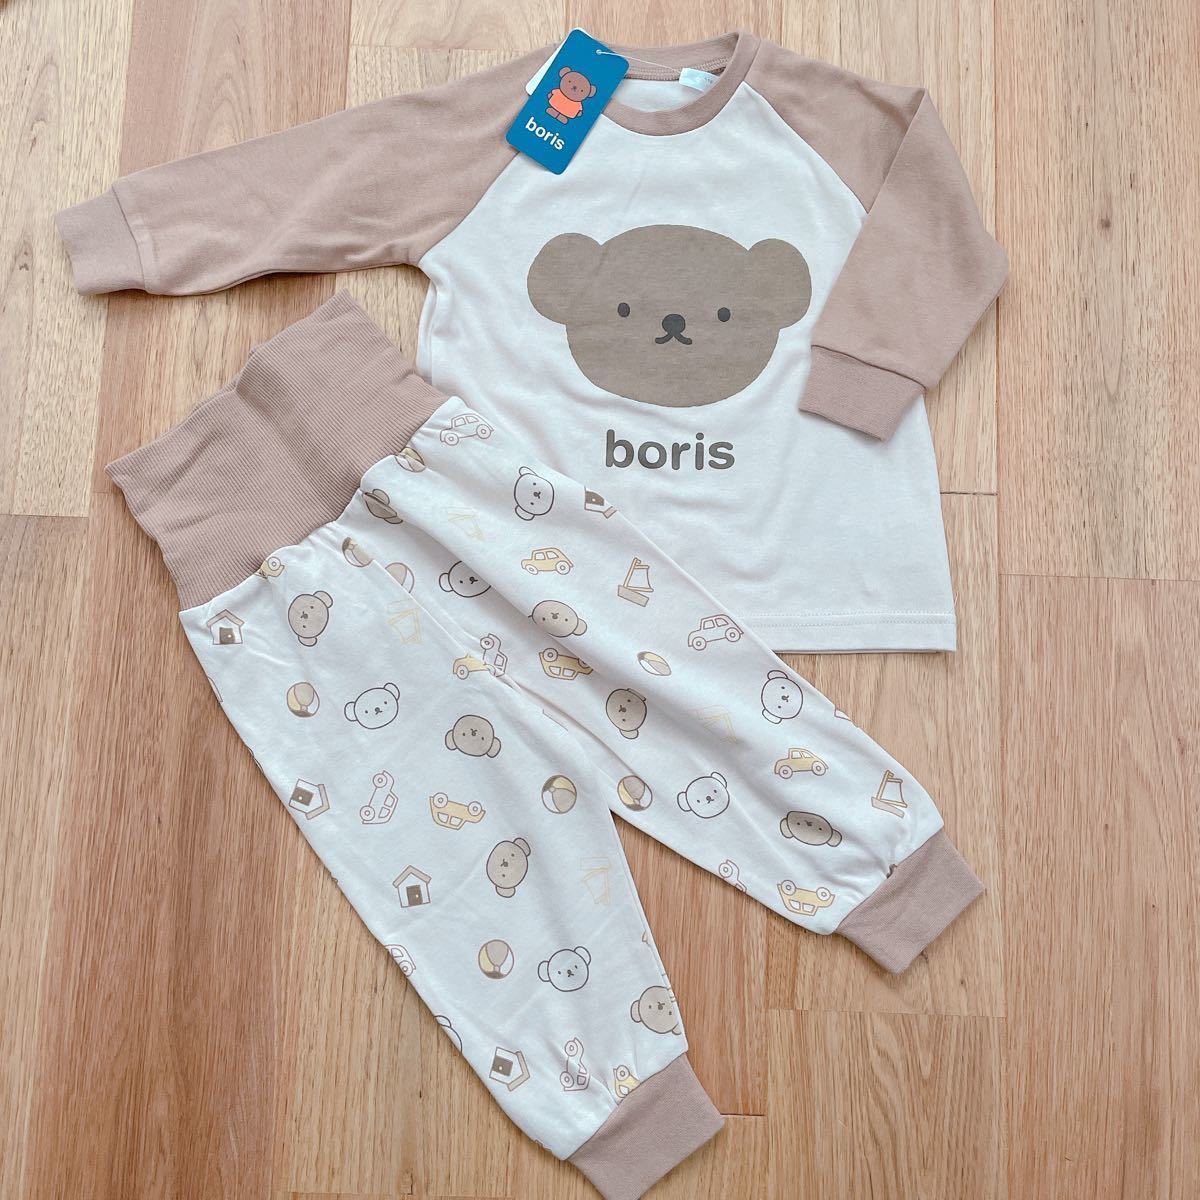 boris ボリス 長袖 腹巻き付きパジャマ 80cm 新品未使用 バースデイ